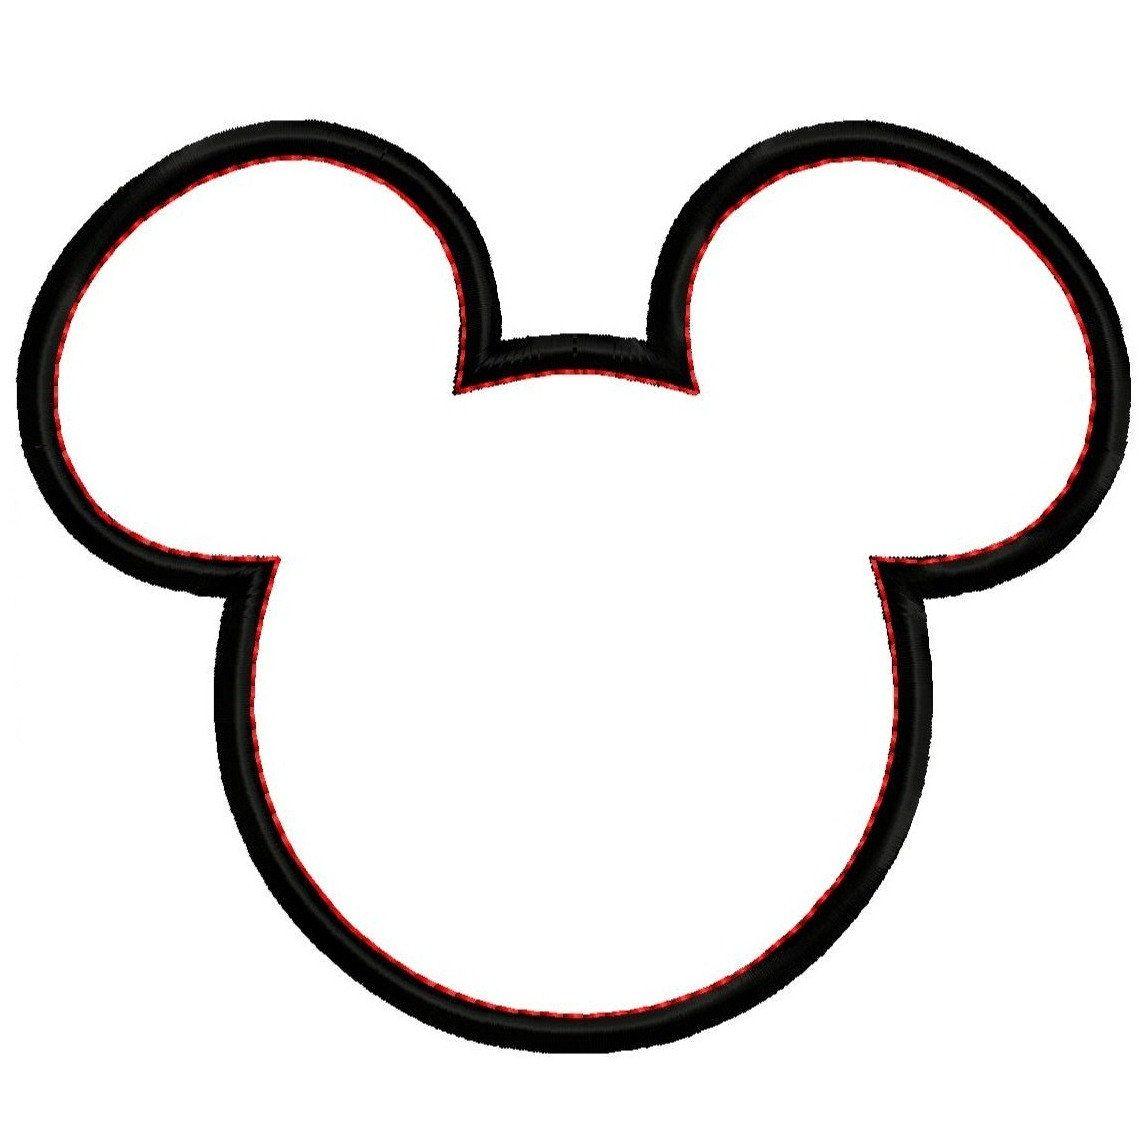 1144x1144 Hình ảnh miễn phí về đầu chuột Mickey, Tải xuống Clip Art Miễn phí, Miễn phí